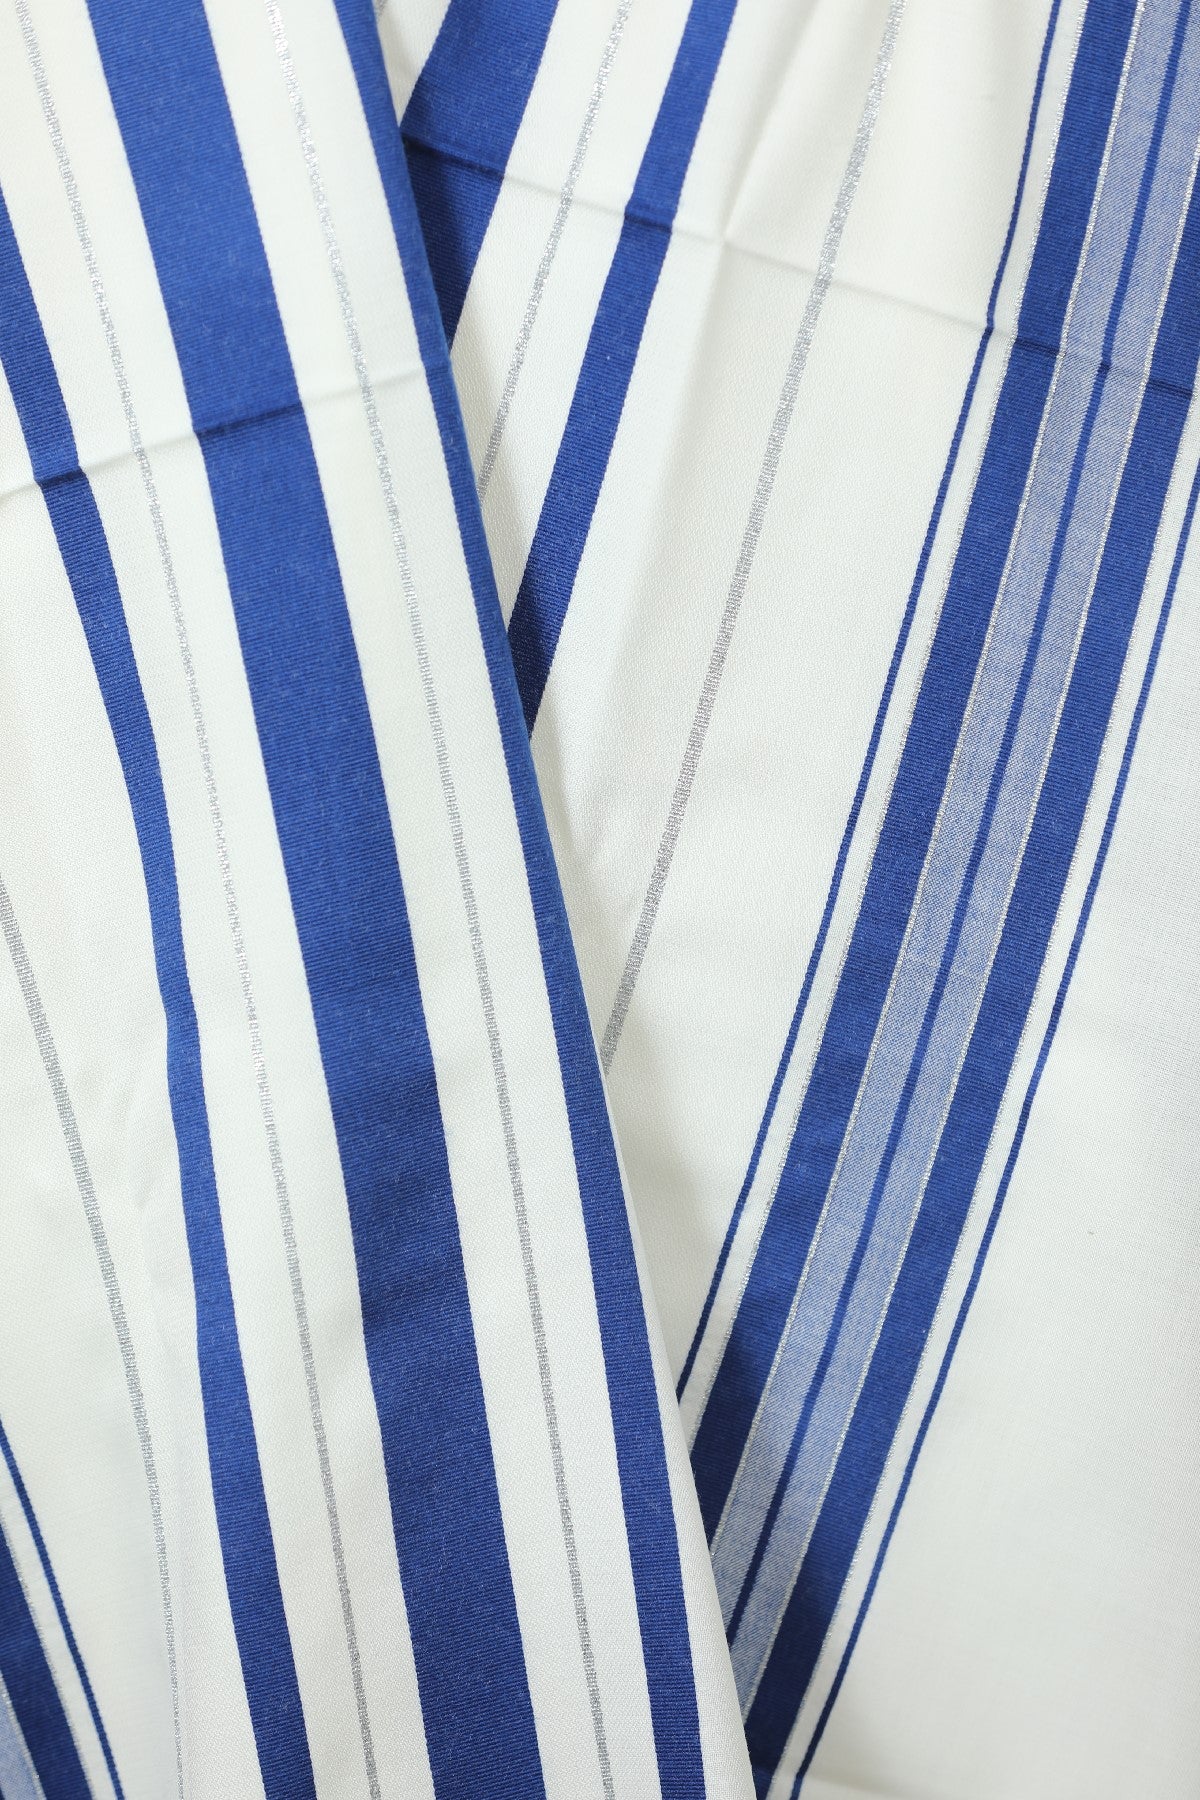 Wool Tallit [Blue & Silver Stripes] XXXS-L, TALITANIA